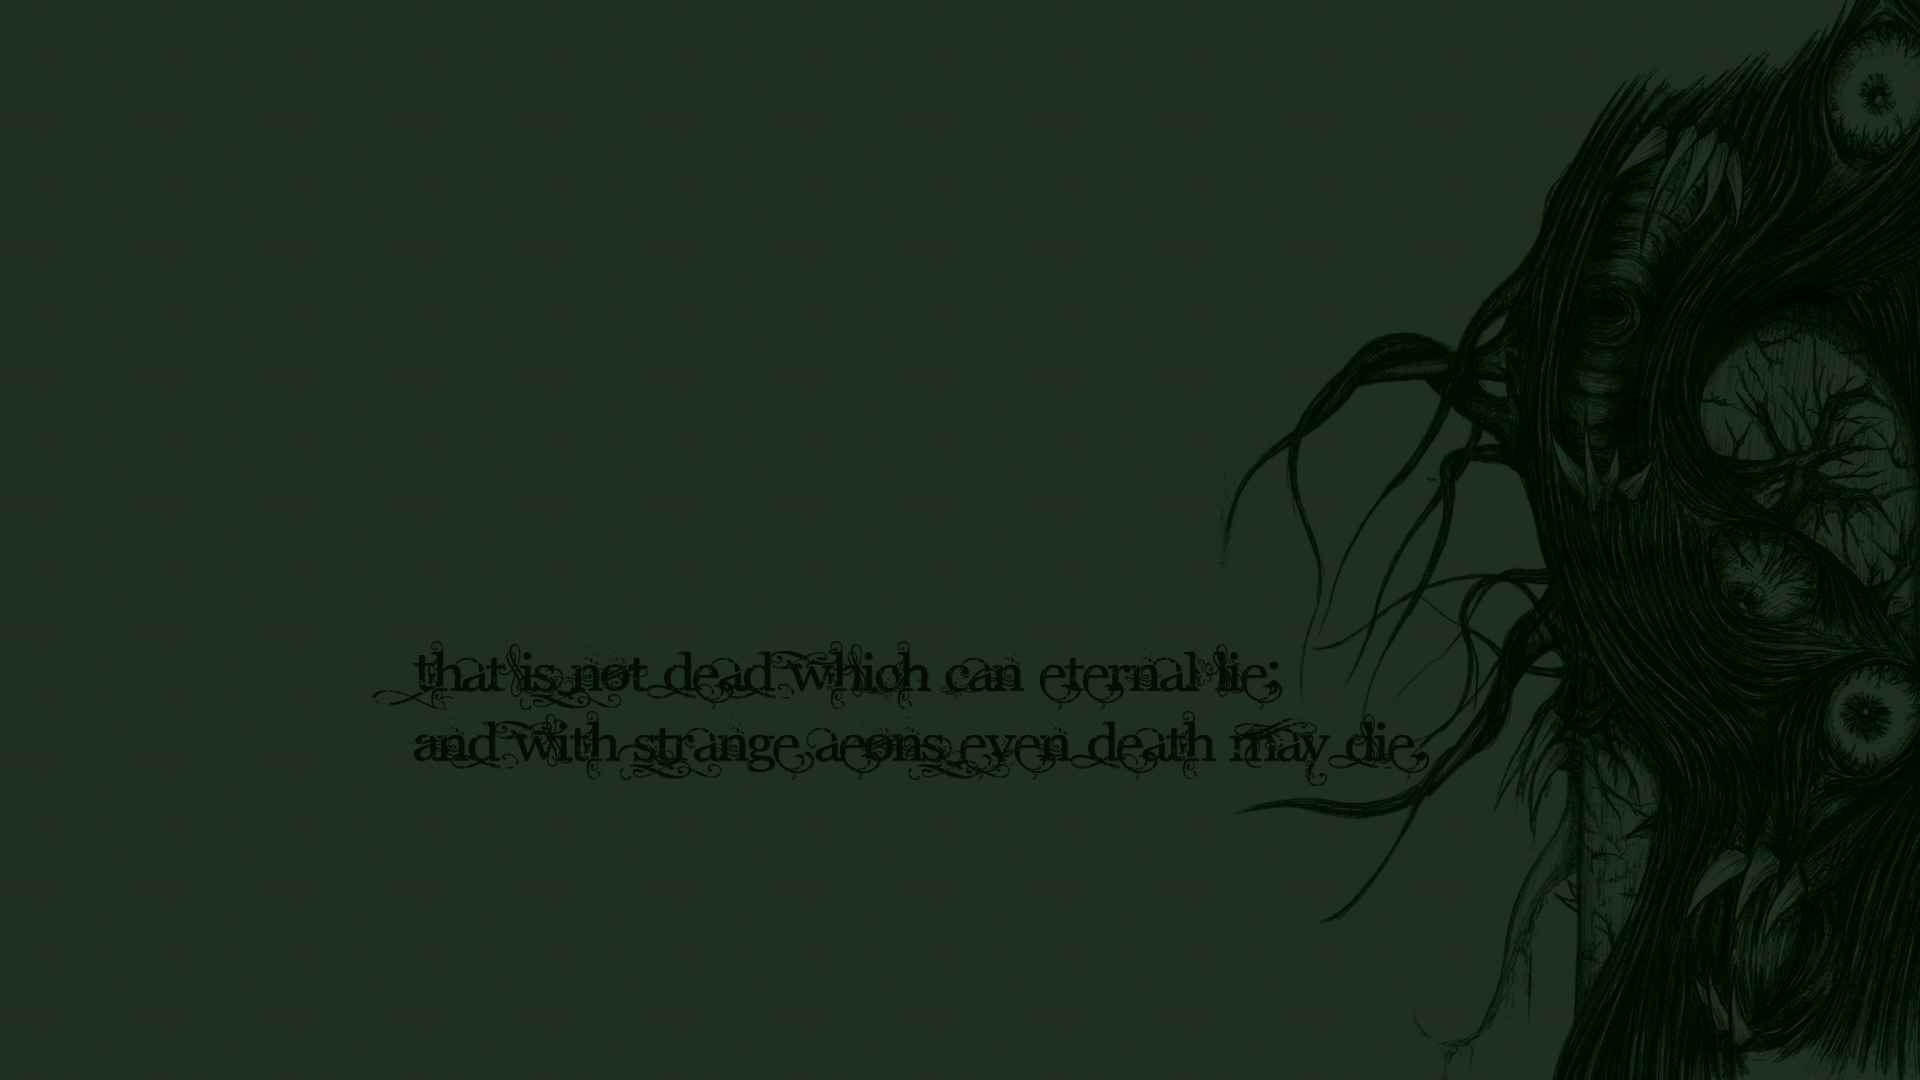 Cthulhu Hp Lovecraft HD Wallpaper